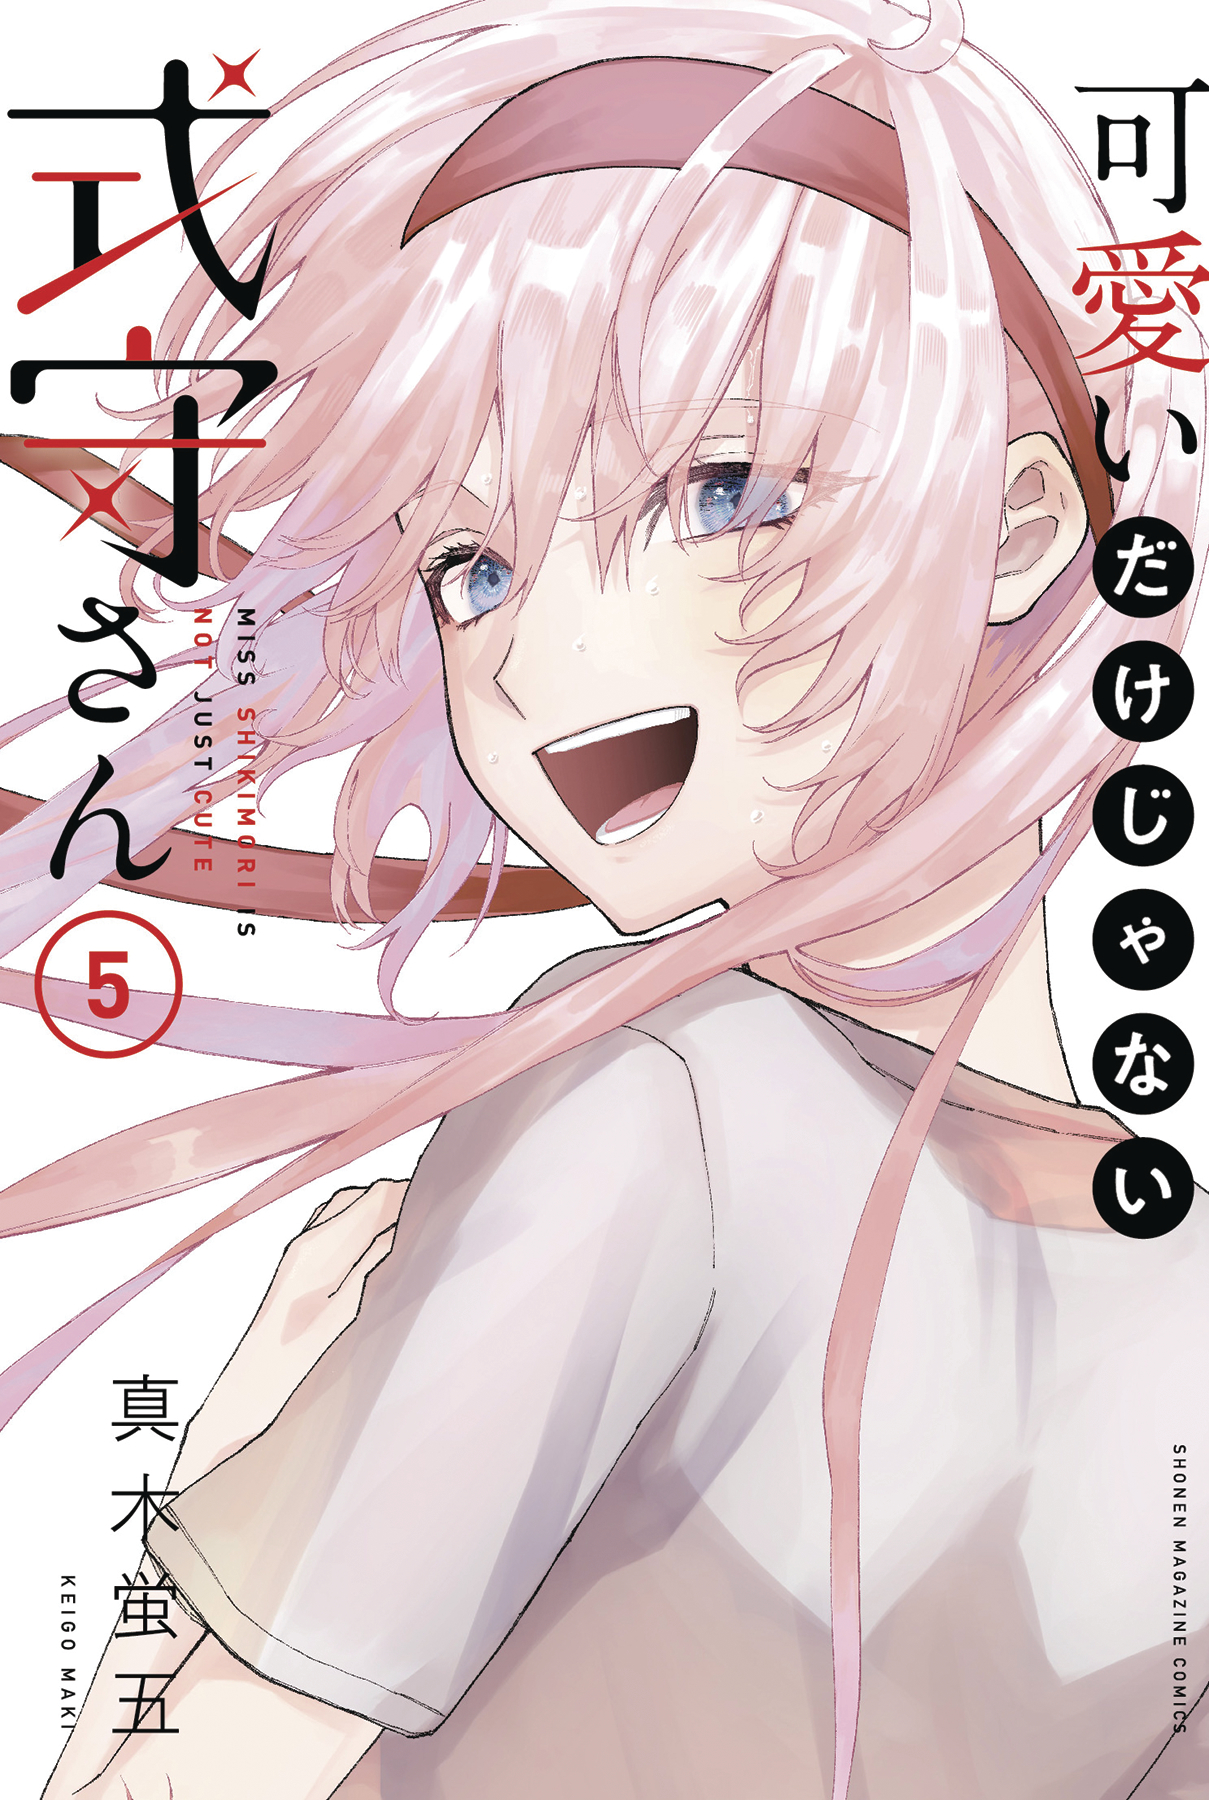 Shikimori's Not Just a Cutie Manga Volume 5